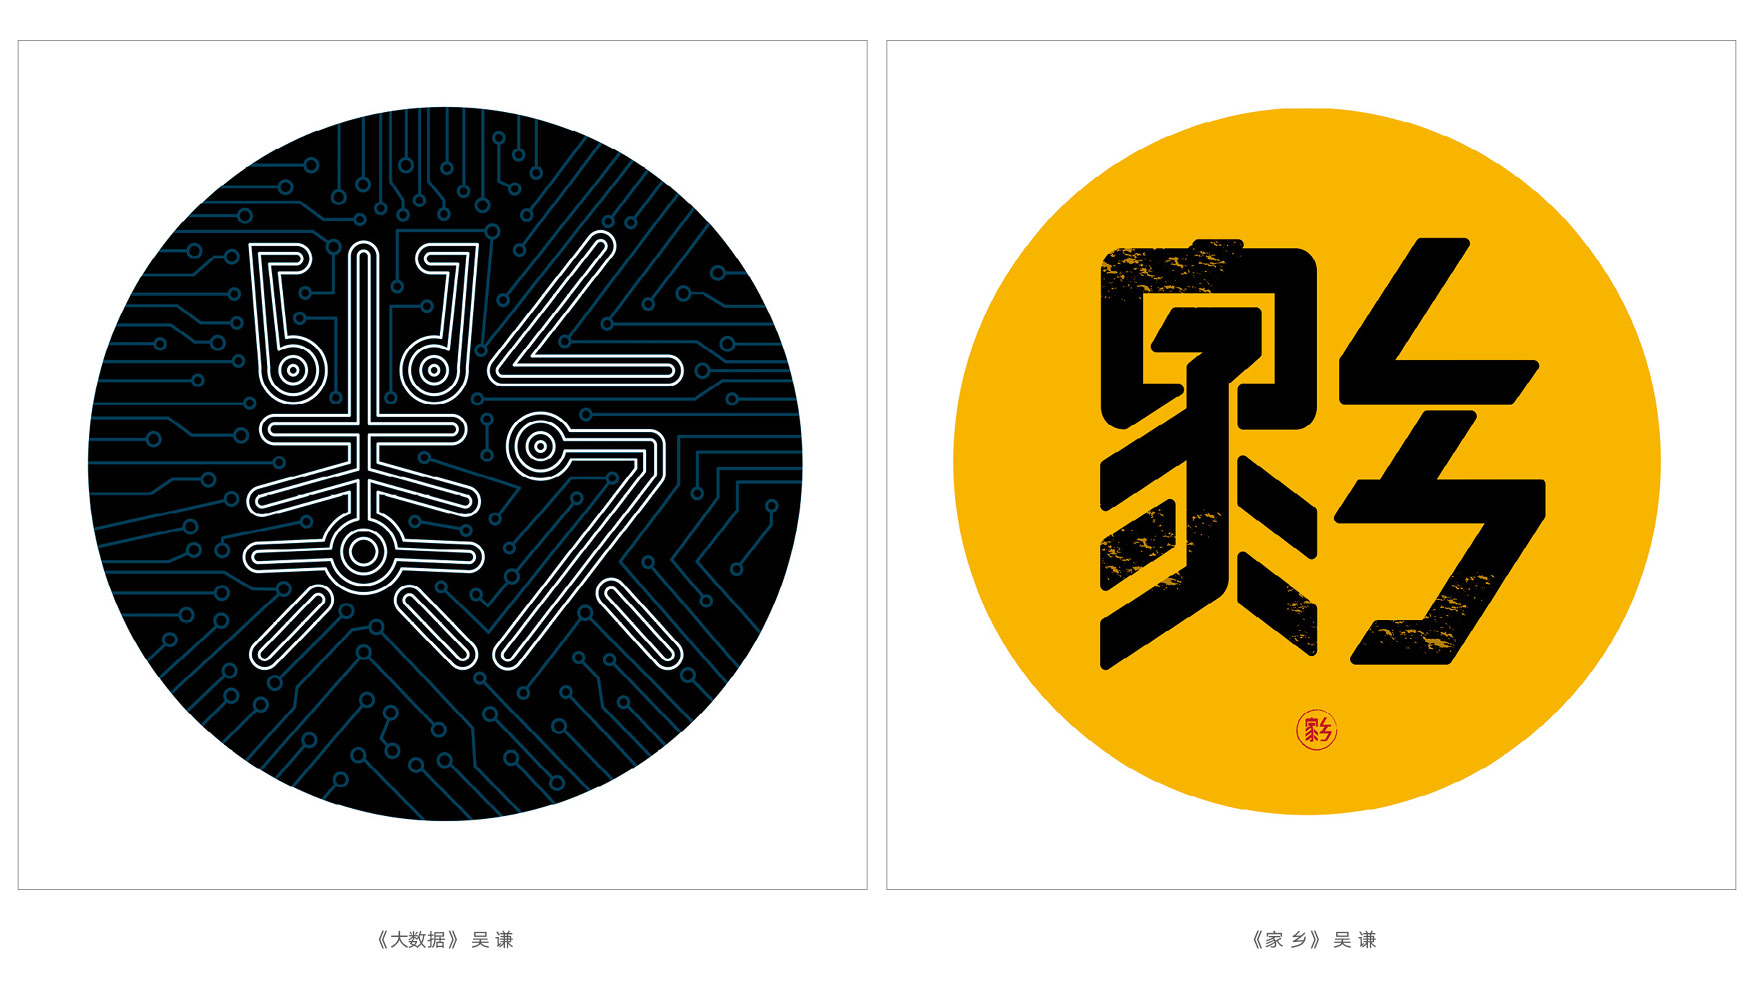 上行设计/绝对贵州“百黔百态”创意字体邀请展169件作品全集